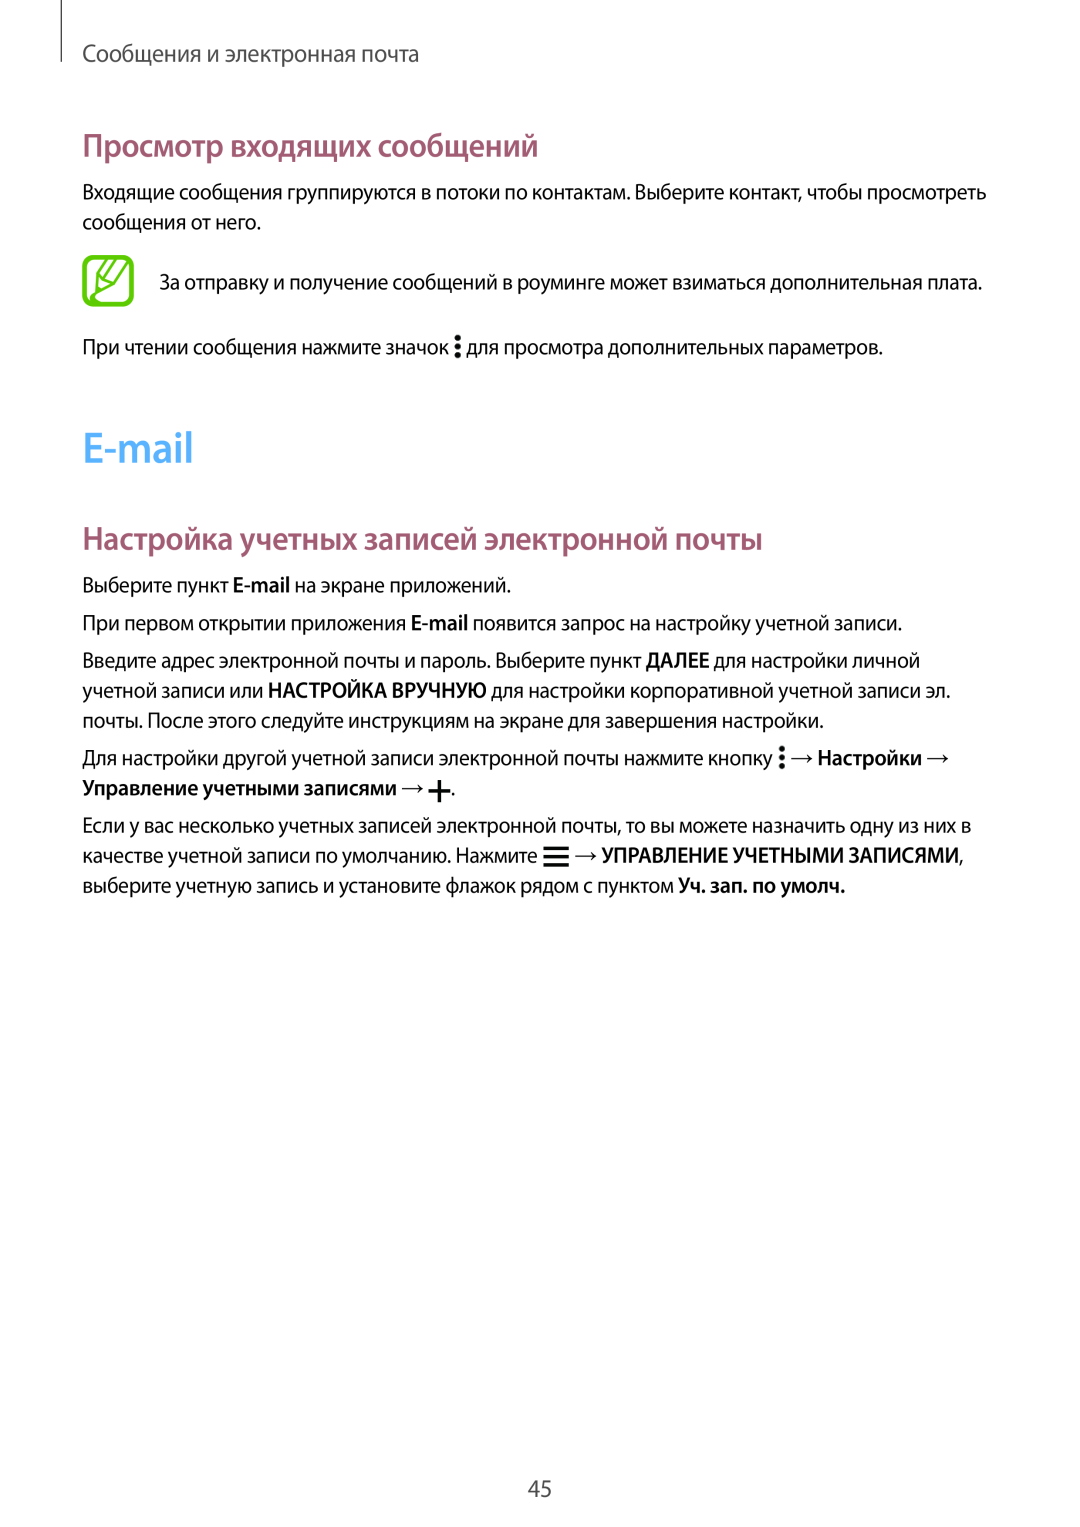 Samsung SM-G531FZAASER, SM-G531FZWASEB E-mail, Просмотр входящих сообщений, Настройка учетных записей электронной почты 